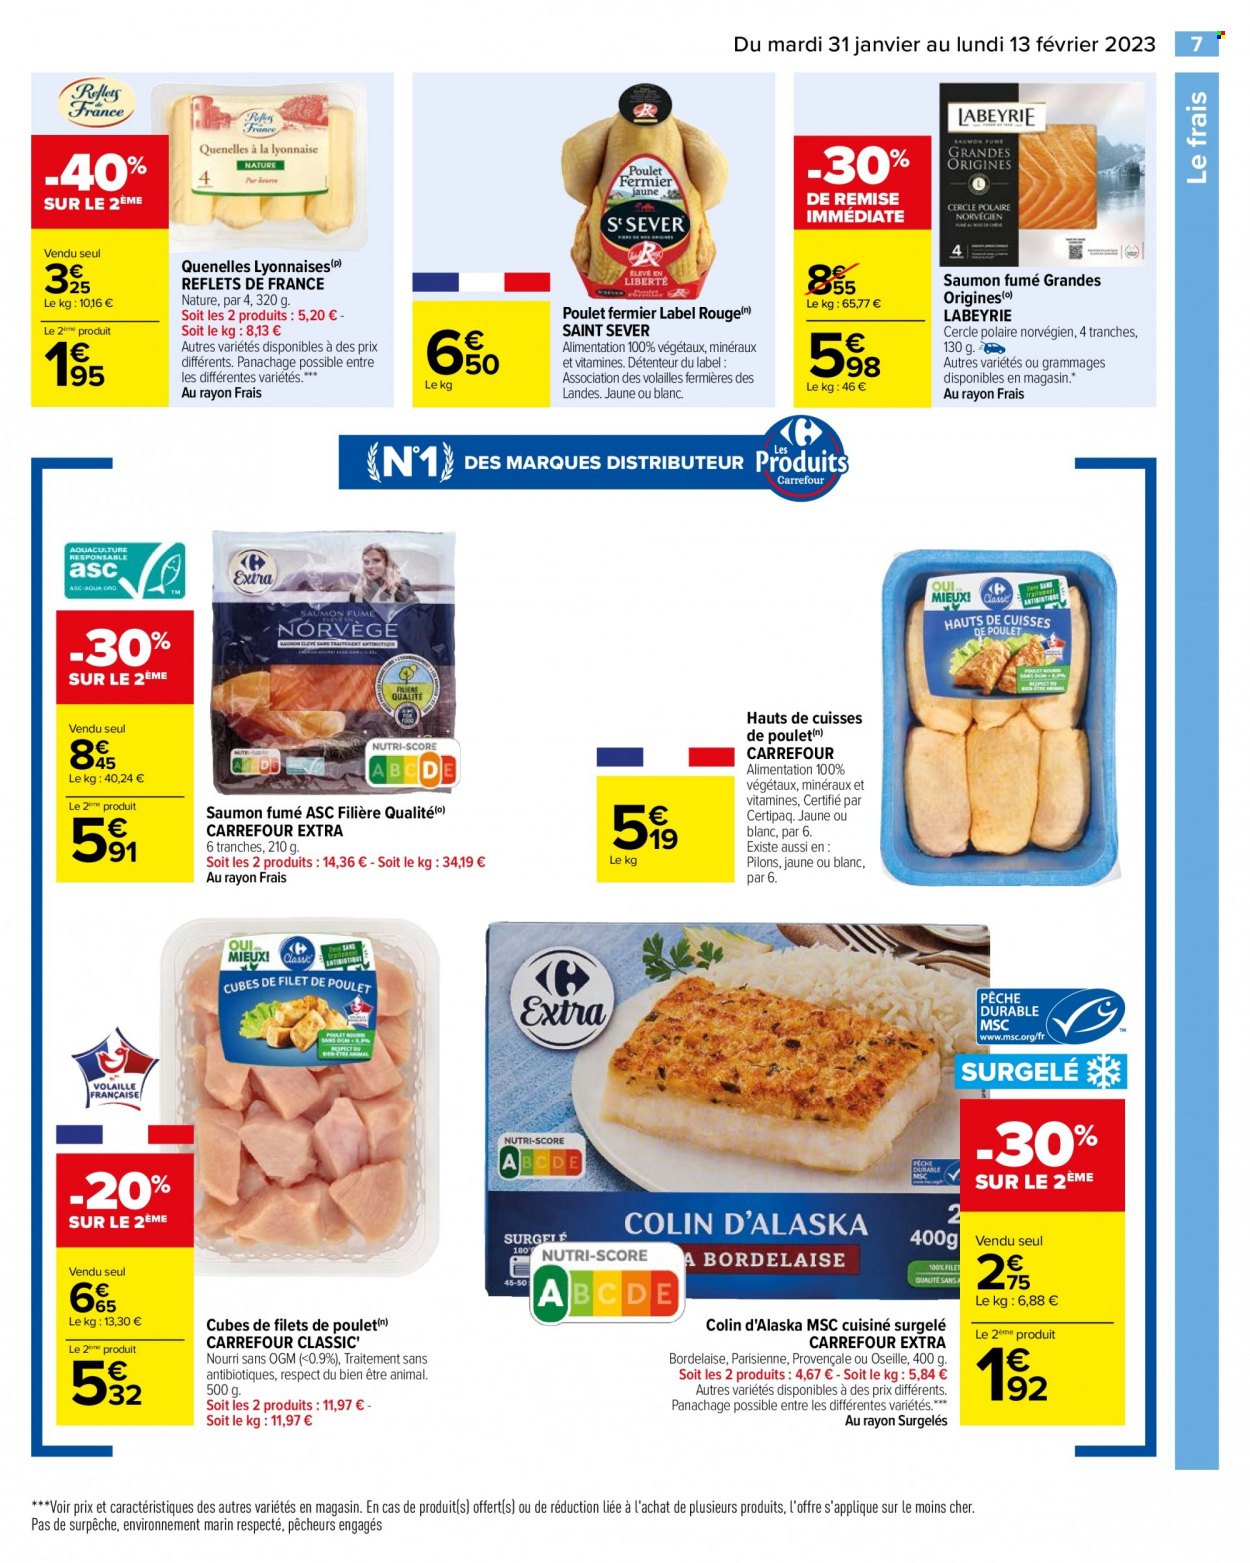 thumbnail - Catalogue Carrefour Hypermarchés - 31/01/2023 - 13/02/2023 - Produits soldés - filet de poulet, cuisses de poulet, viande de poulet, saumon, colin, Labeyrie, saumon fumé, oseille. Page 9.